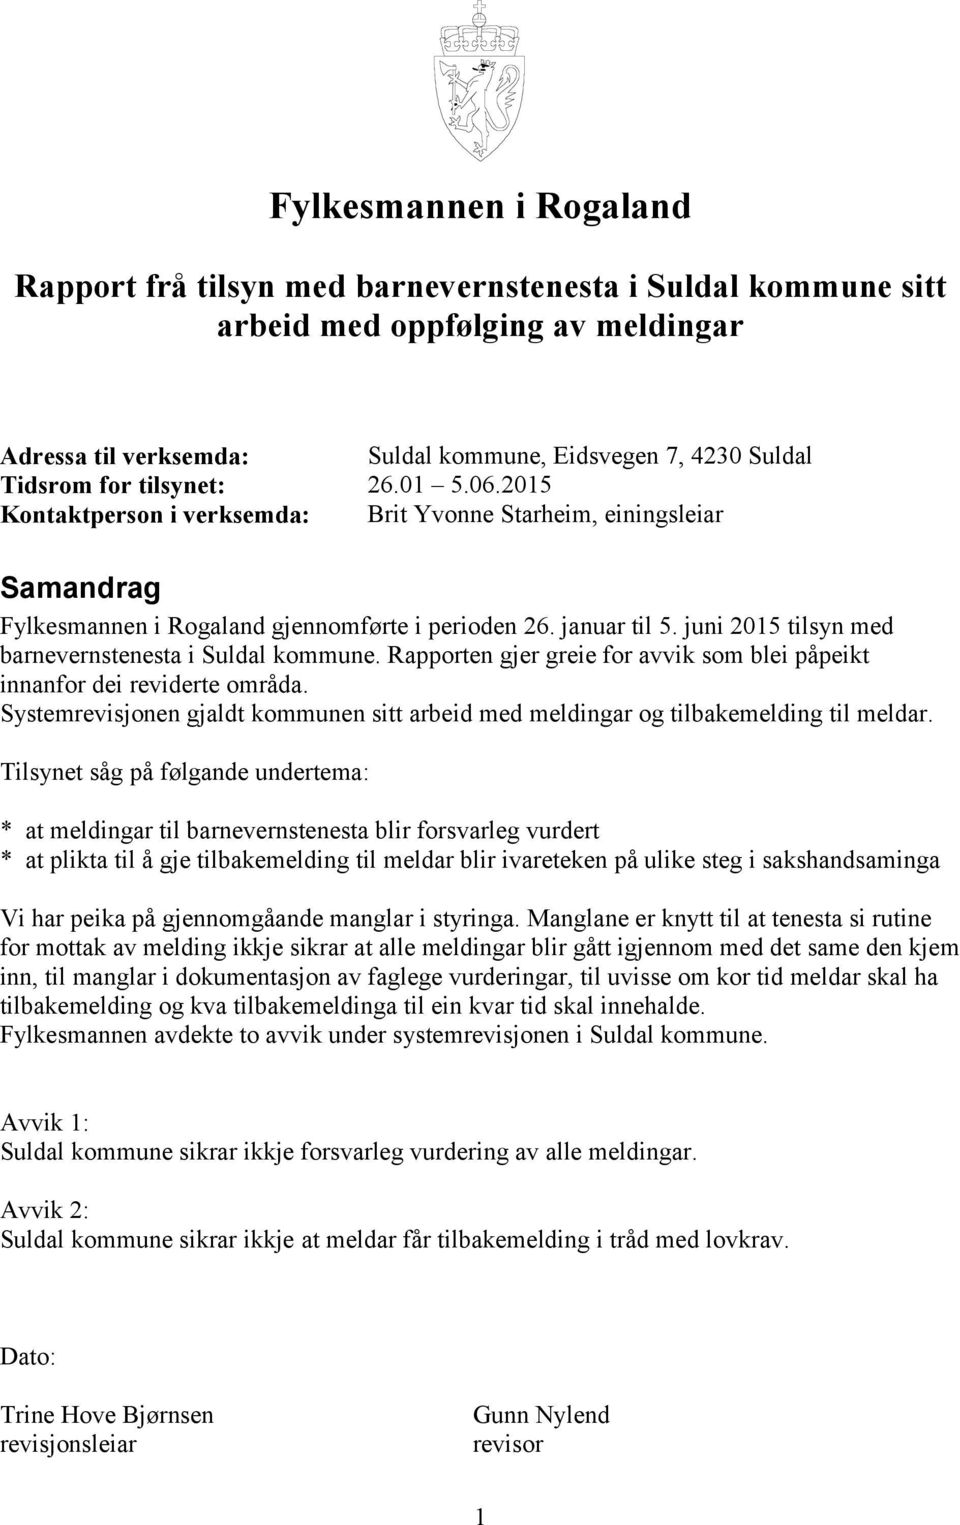 juni 2015 tilsyn med barnevernstenesta i Suldal kommune. Rapporten gjer greie for avvik som blei påpeikt innanfor dei reviderte områda.